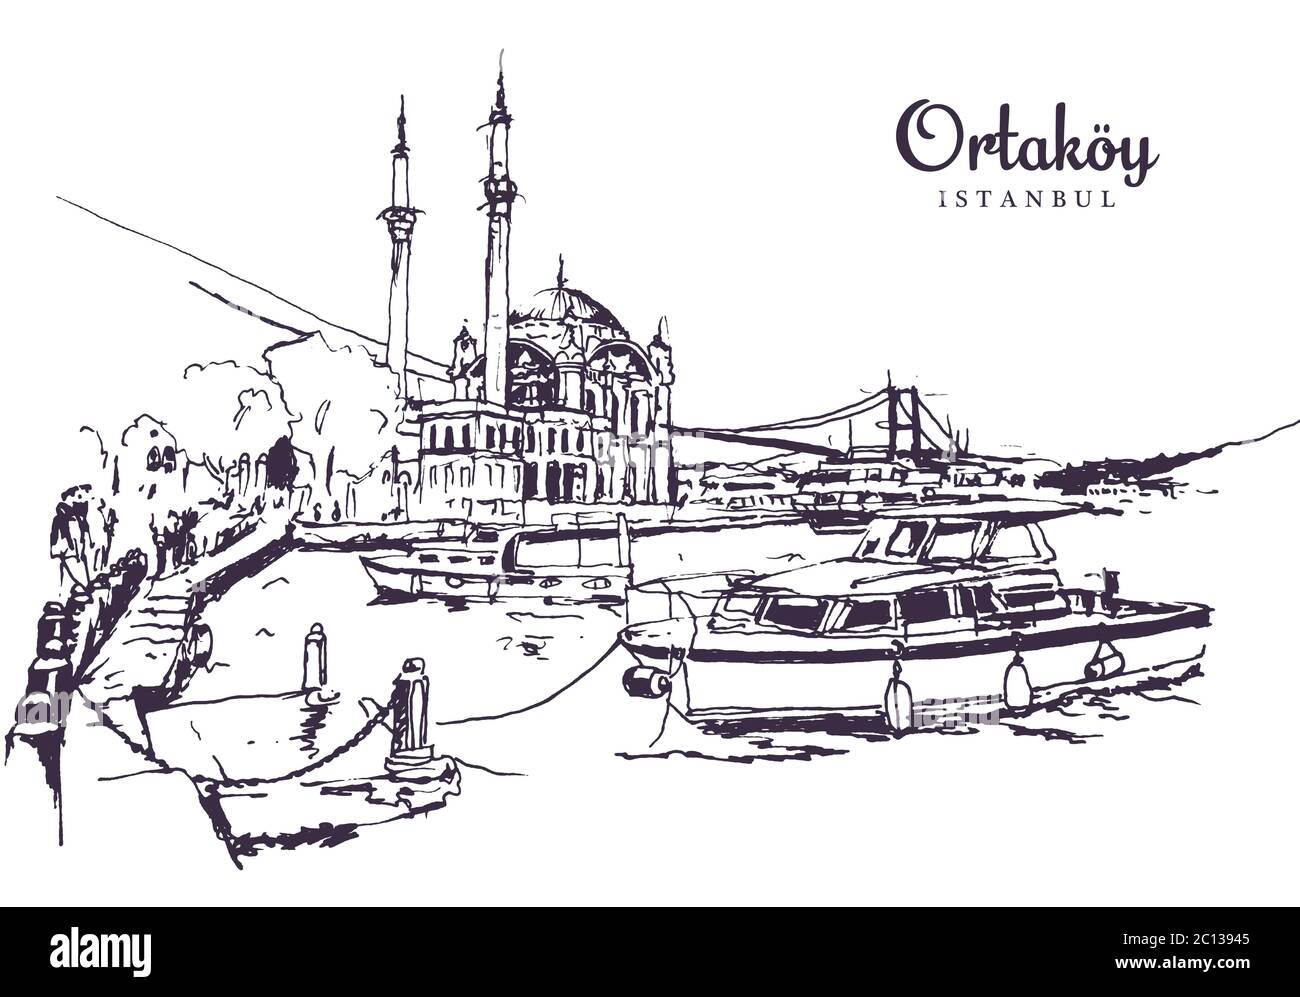 Zeichnung Skizzendarstellung der Buyuk Mecidiye Moschee oder Ortakoy Moschee entlang des Bosporus, Istanbul Stock Vektor